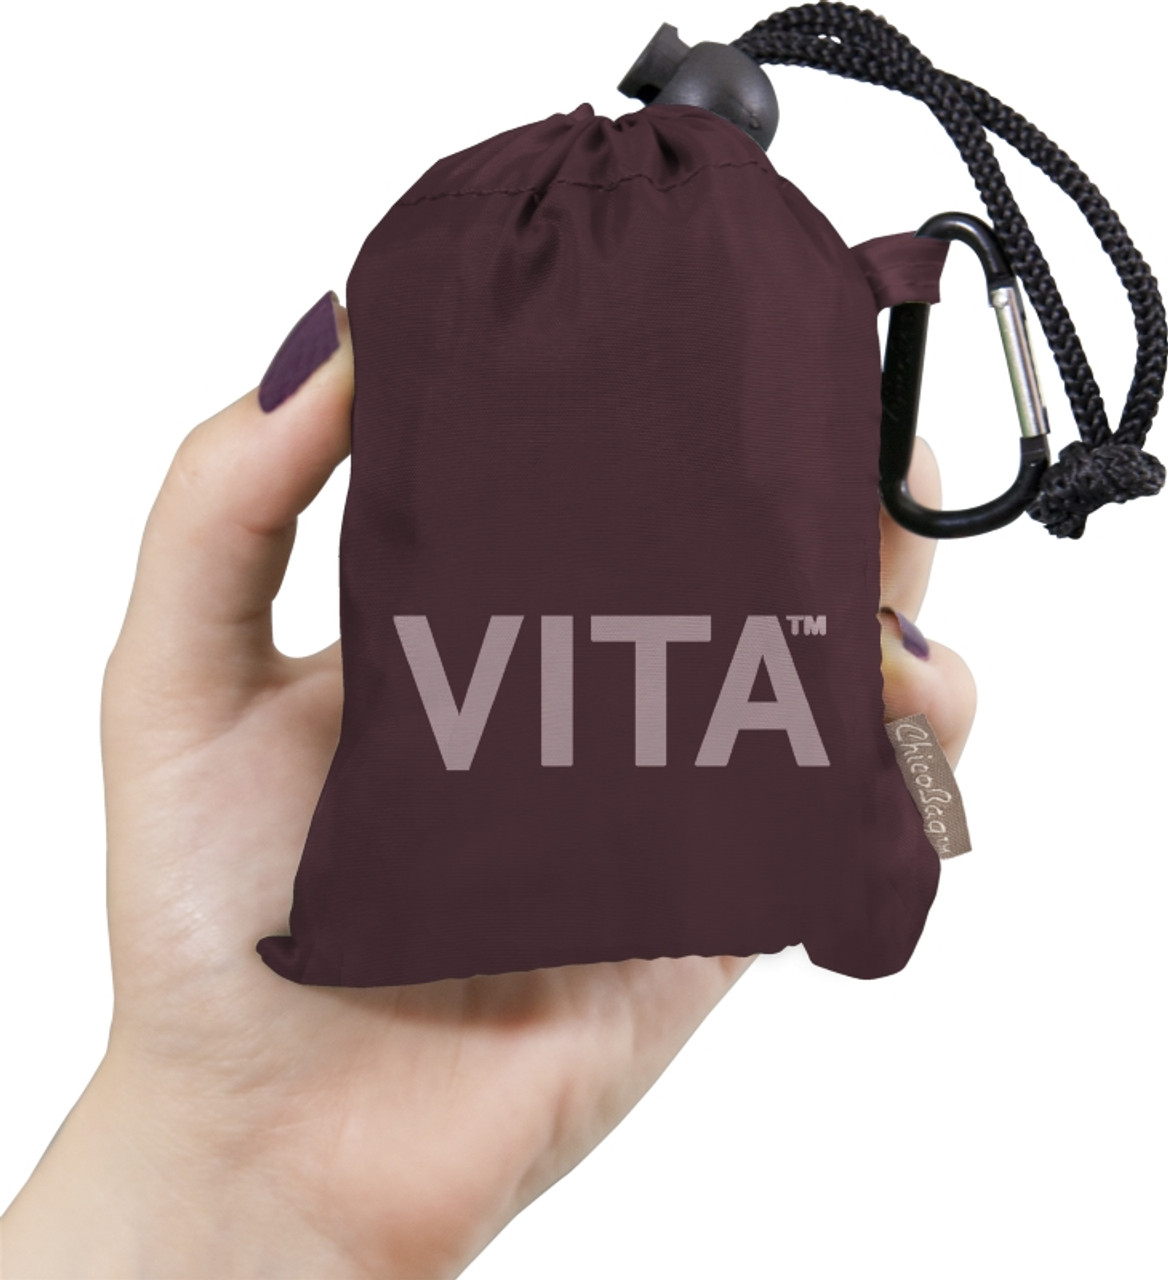 ChicoBag Vita Large Machine Washable Reusable Bag